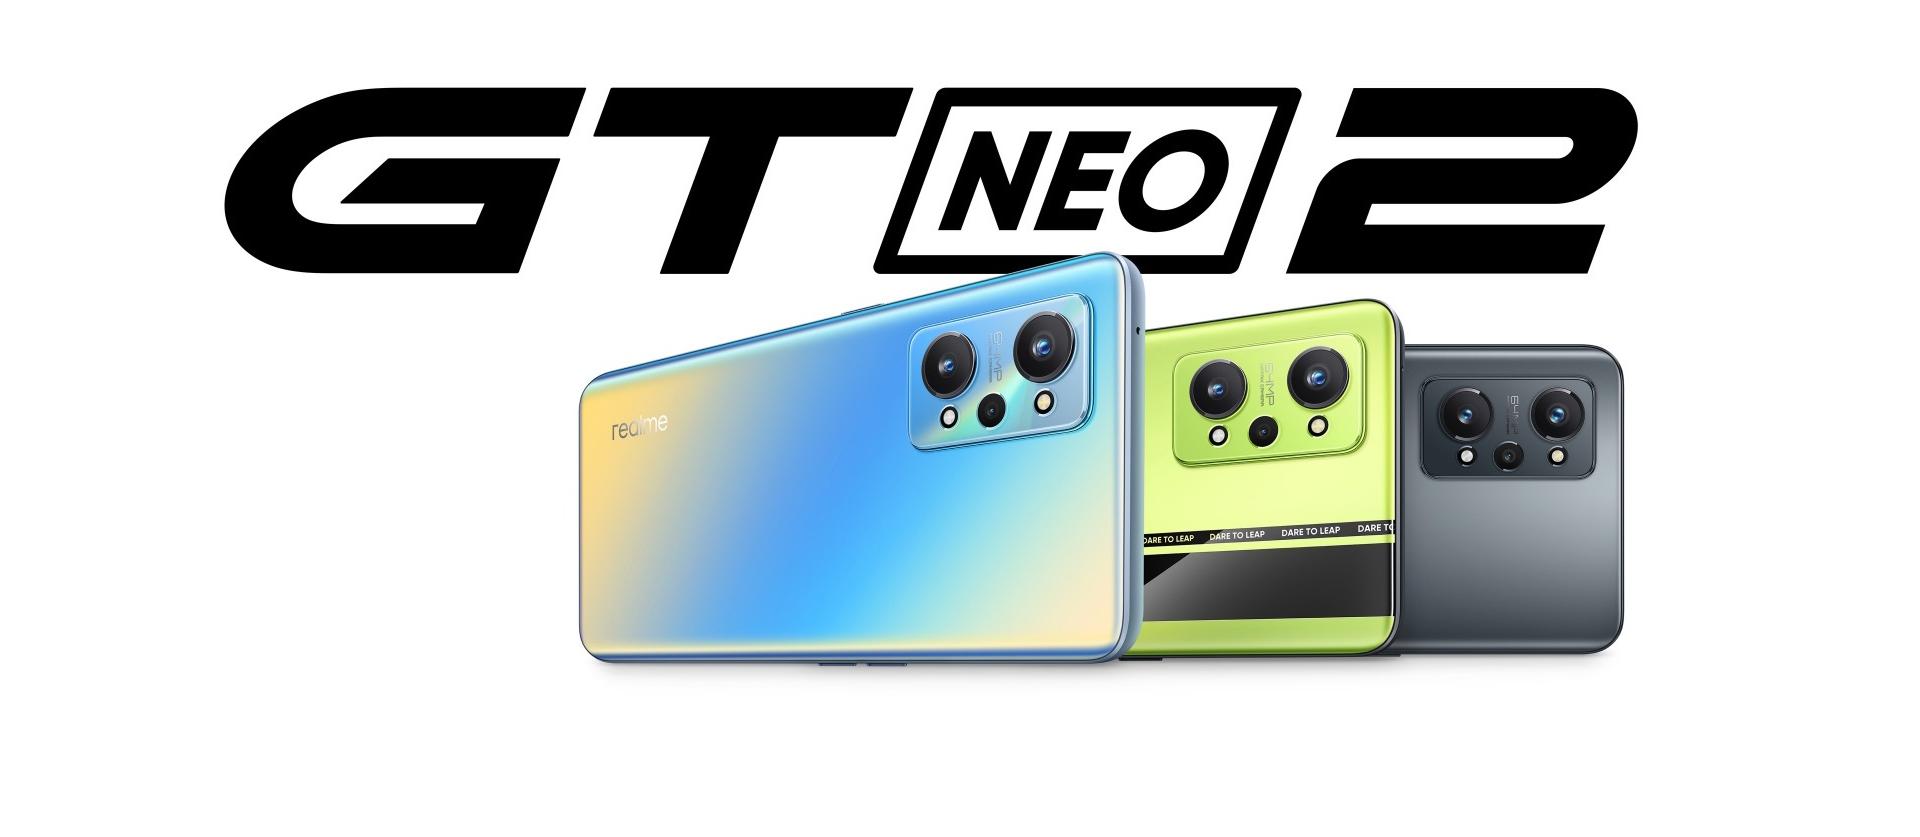 В октябре компания Realme представила новое устройство – GT Neo2.